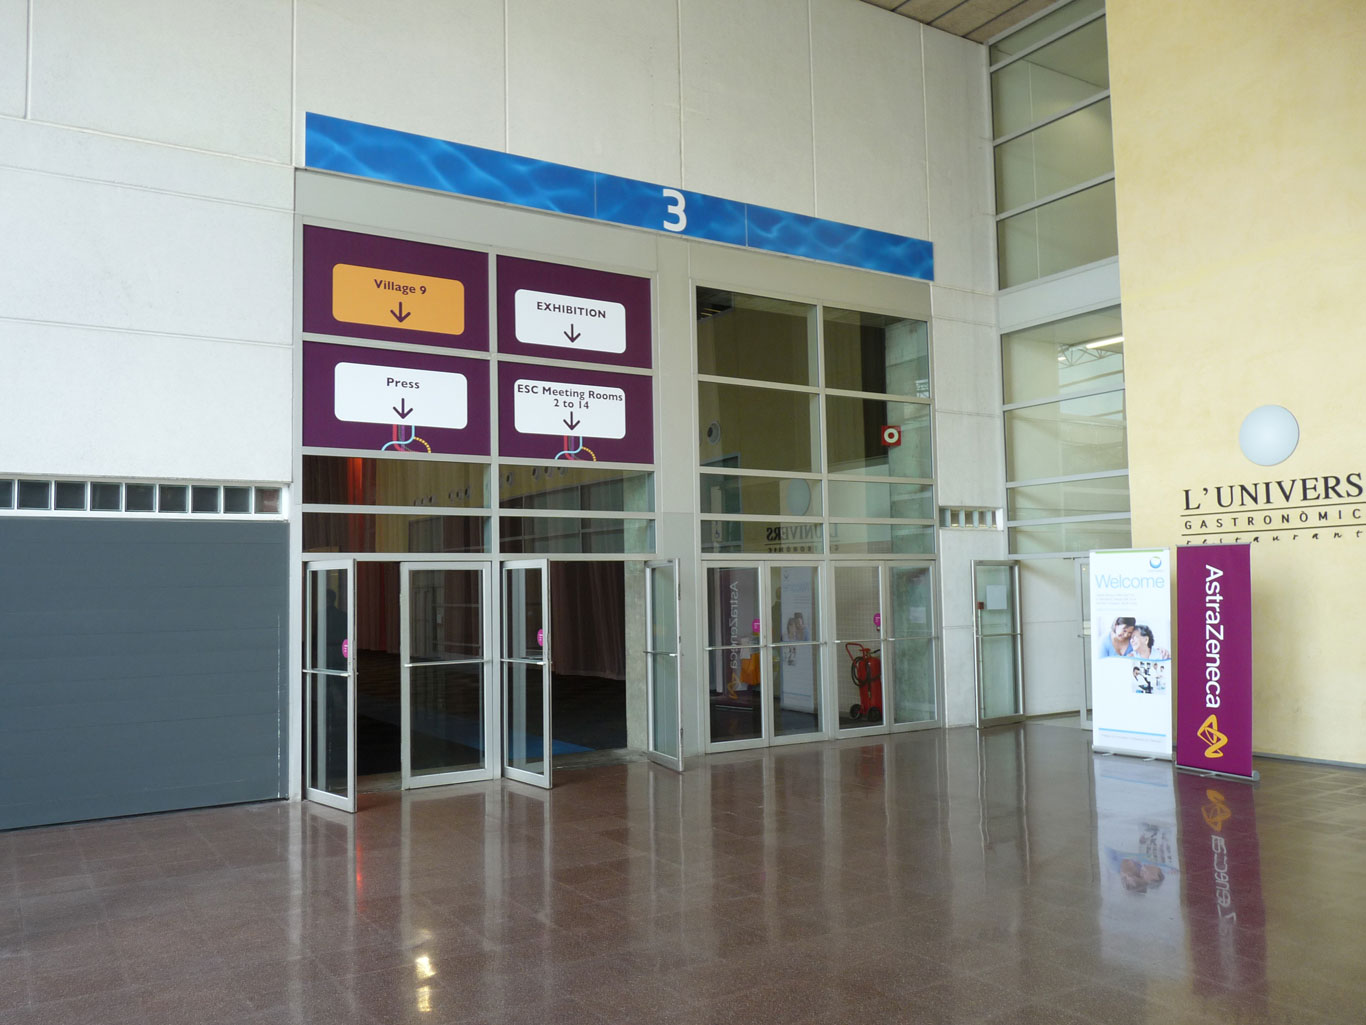 exhibition area